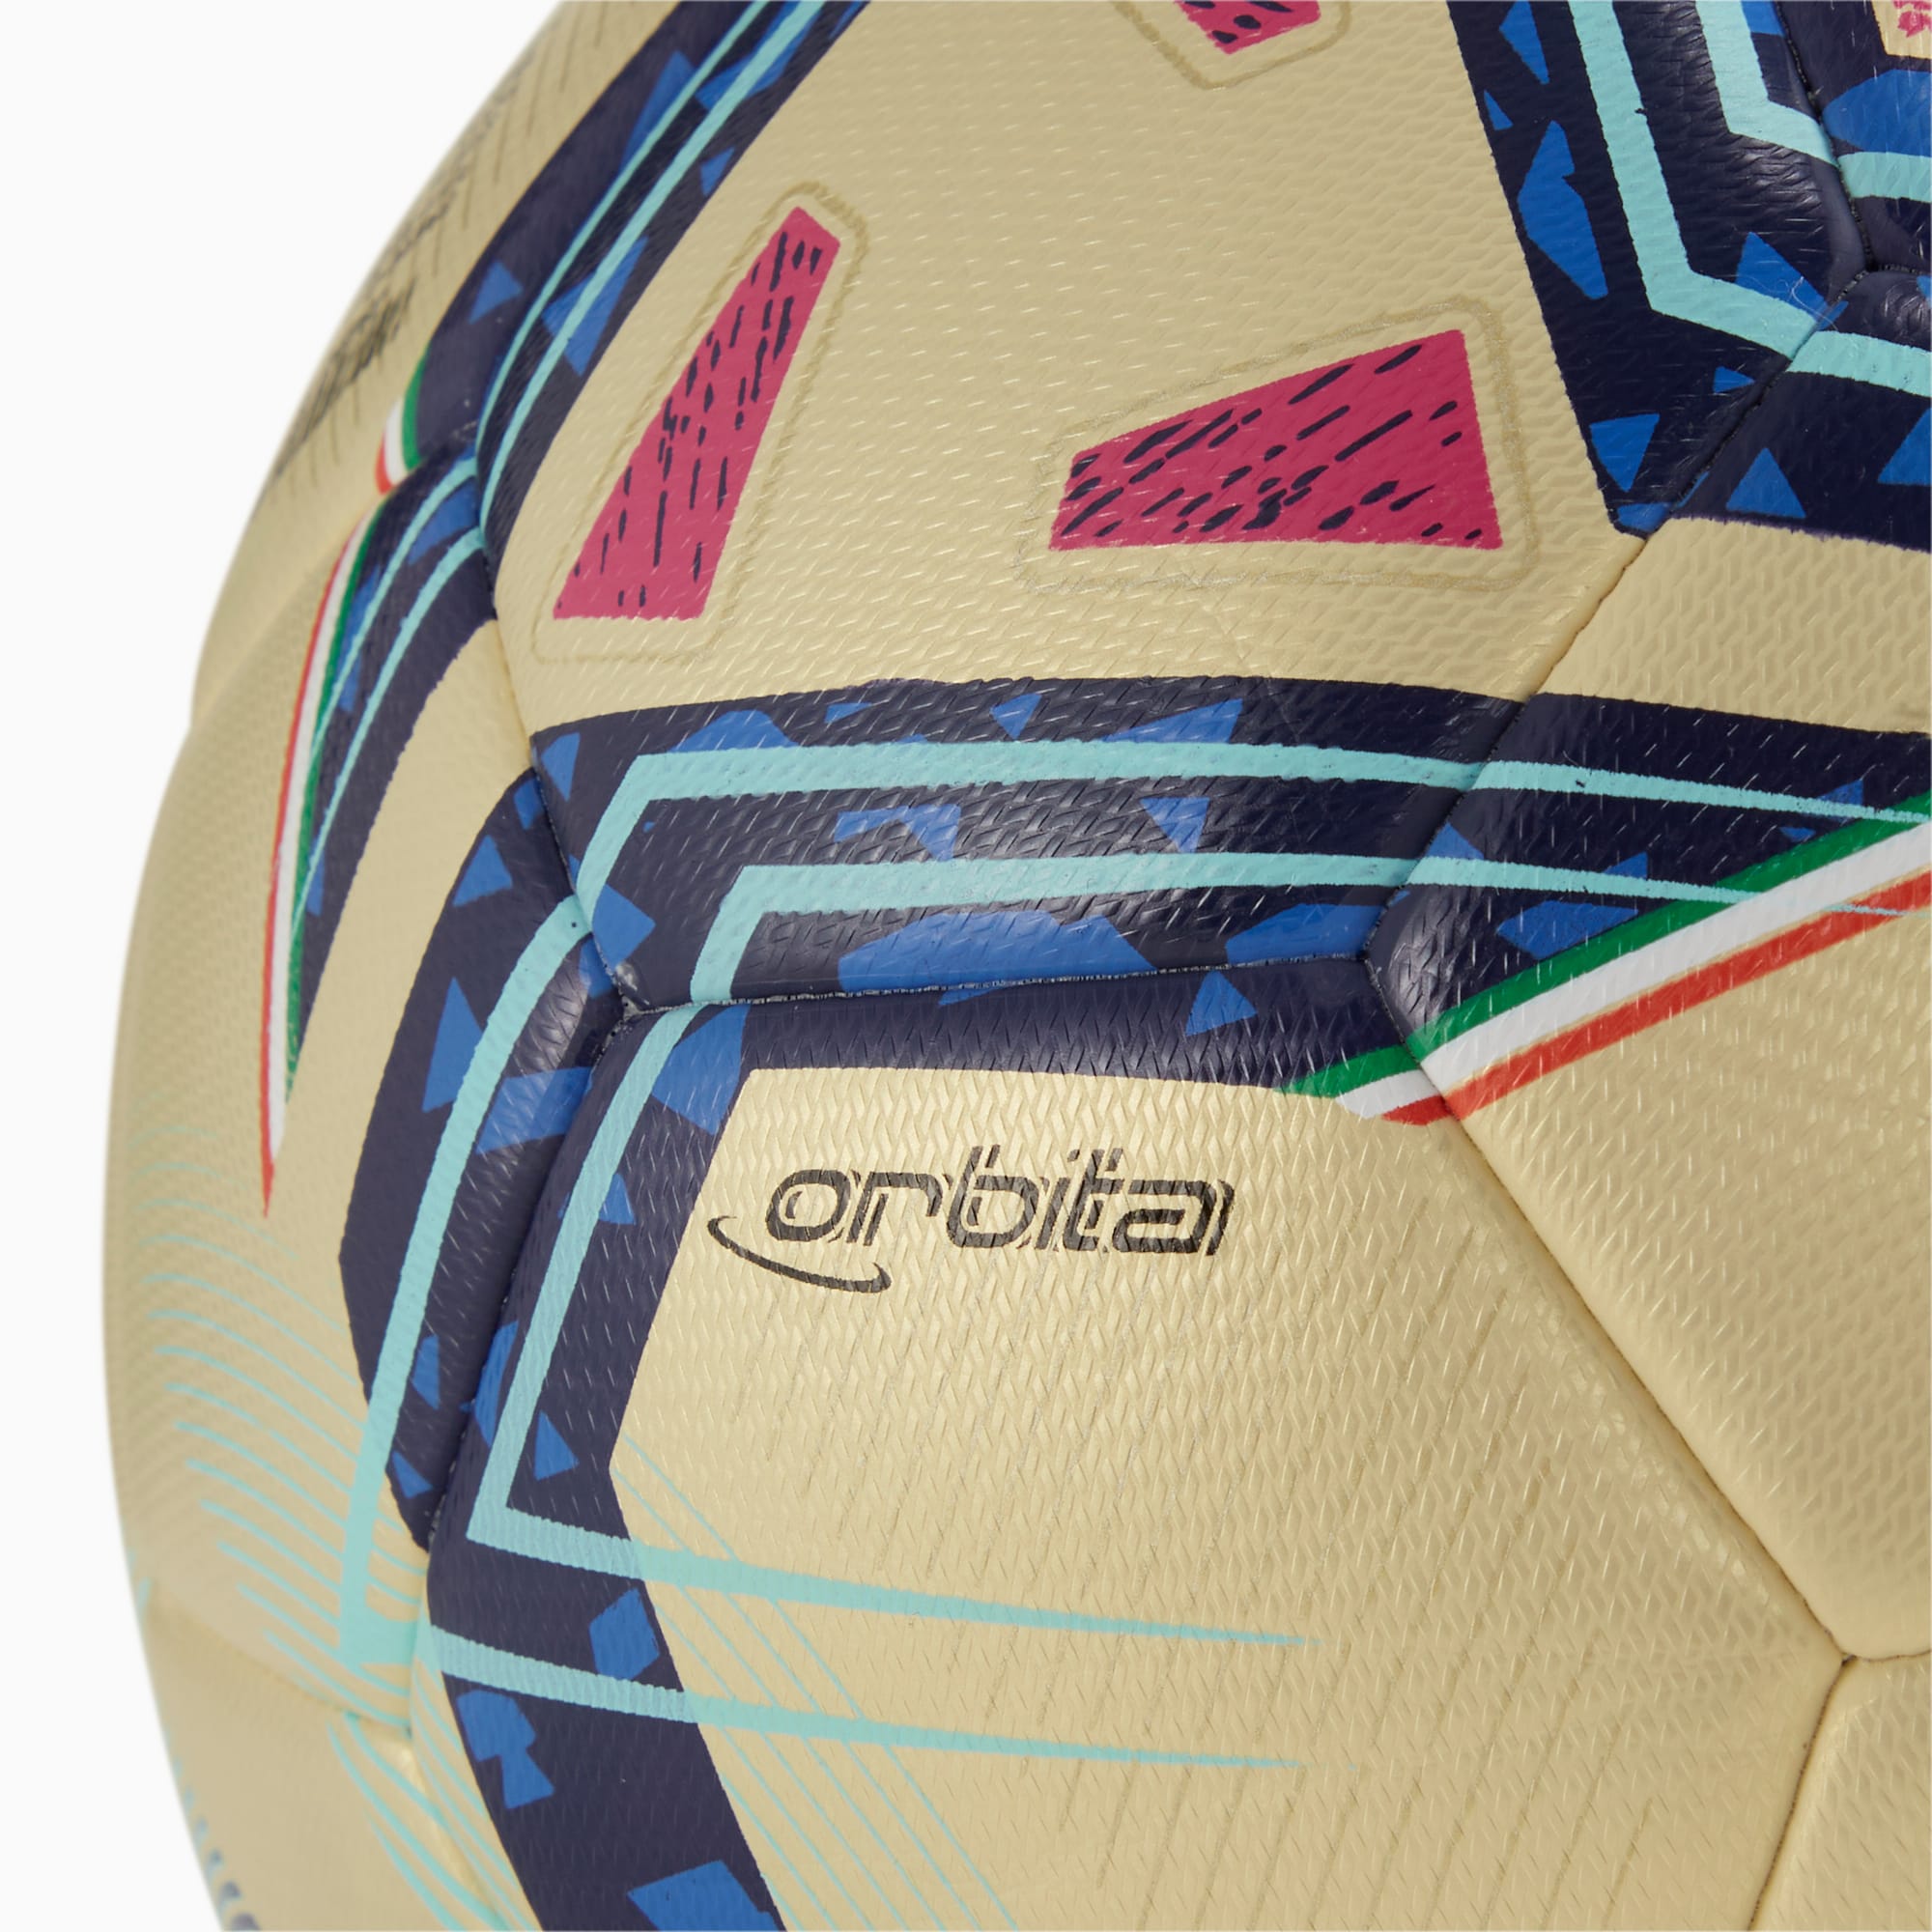 Pallone Da Calcio Ibrido Serie A Edizione Speciale Per Donna, Blu/Rosa/Oro/Altro